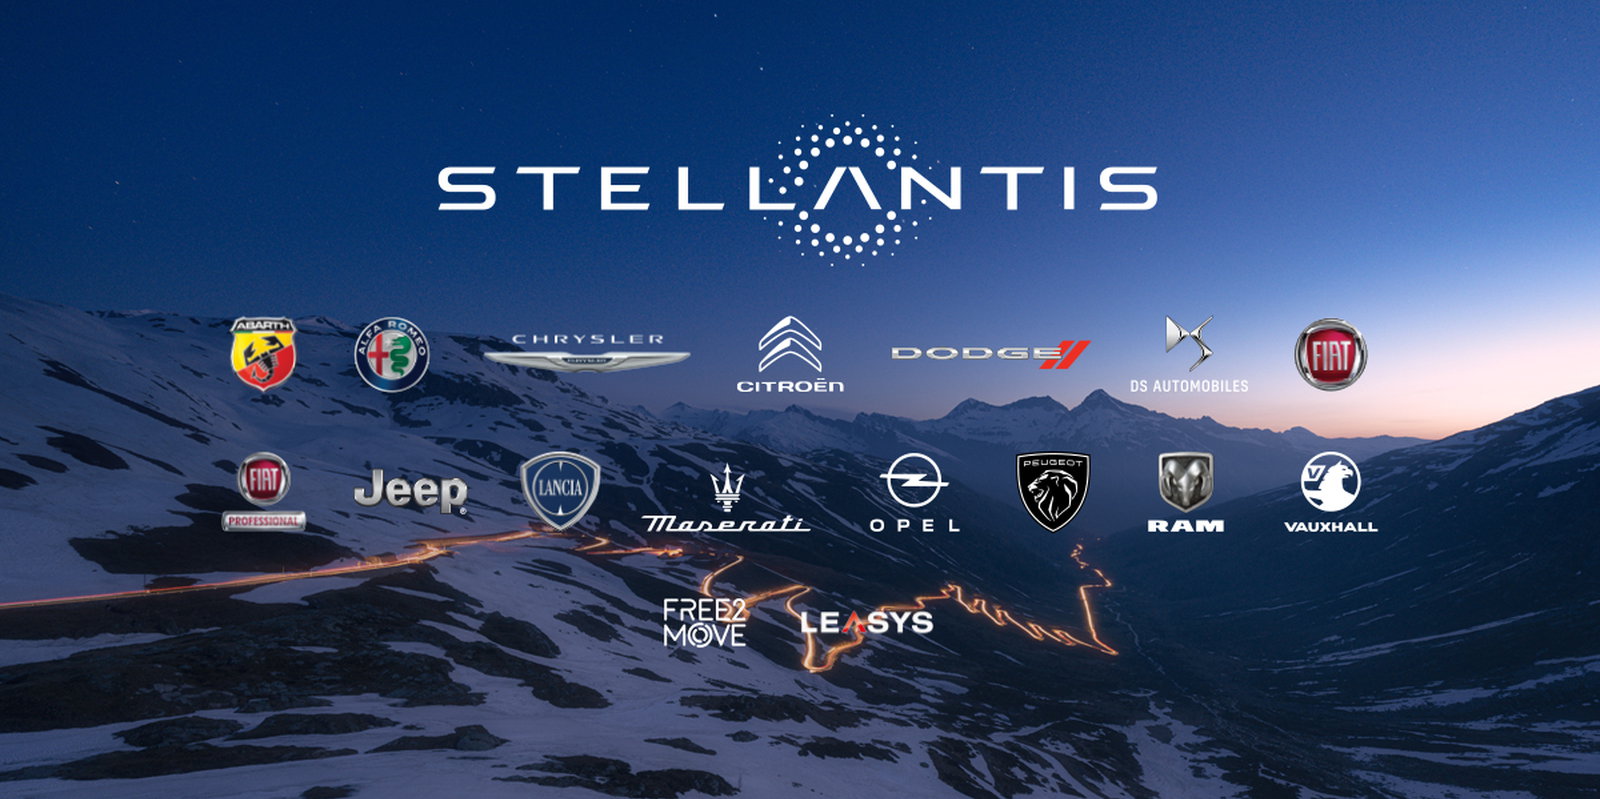 Plany koncernu Stellantis ujawnione. Znamy platformy i nowe motto firm